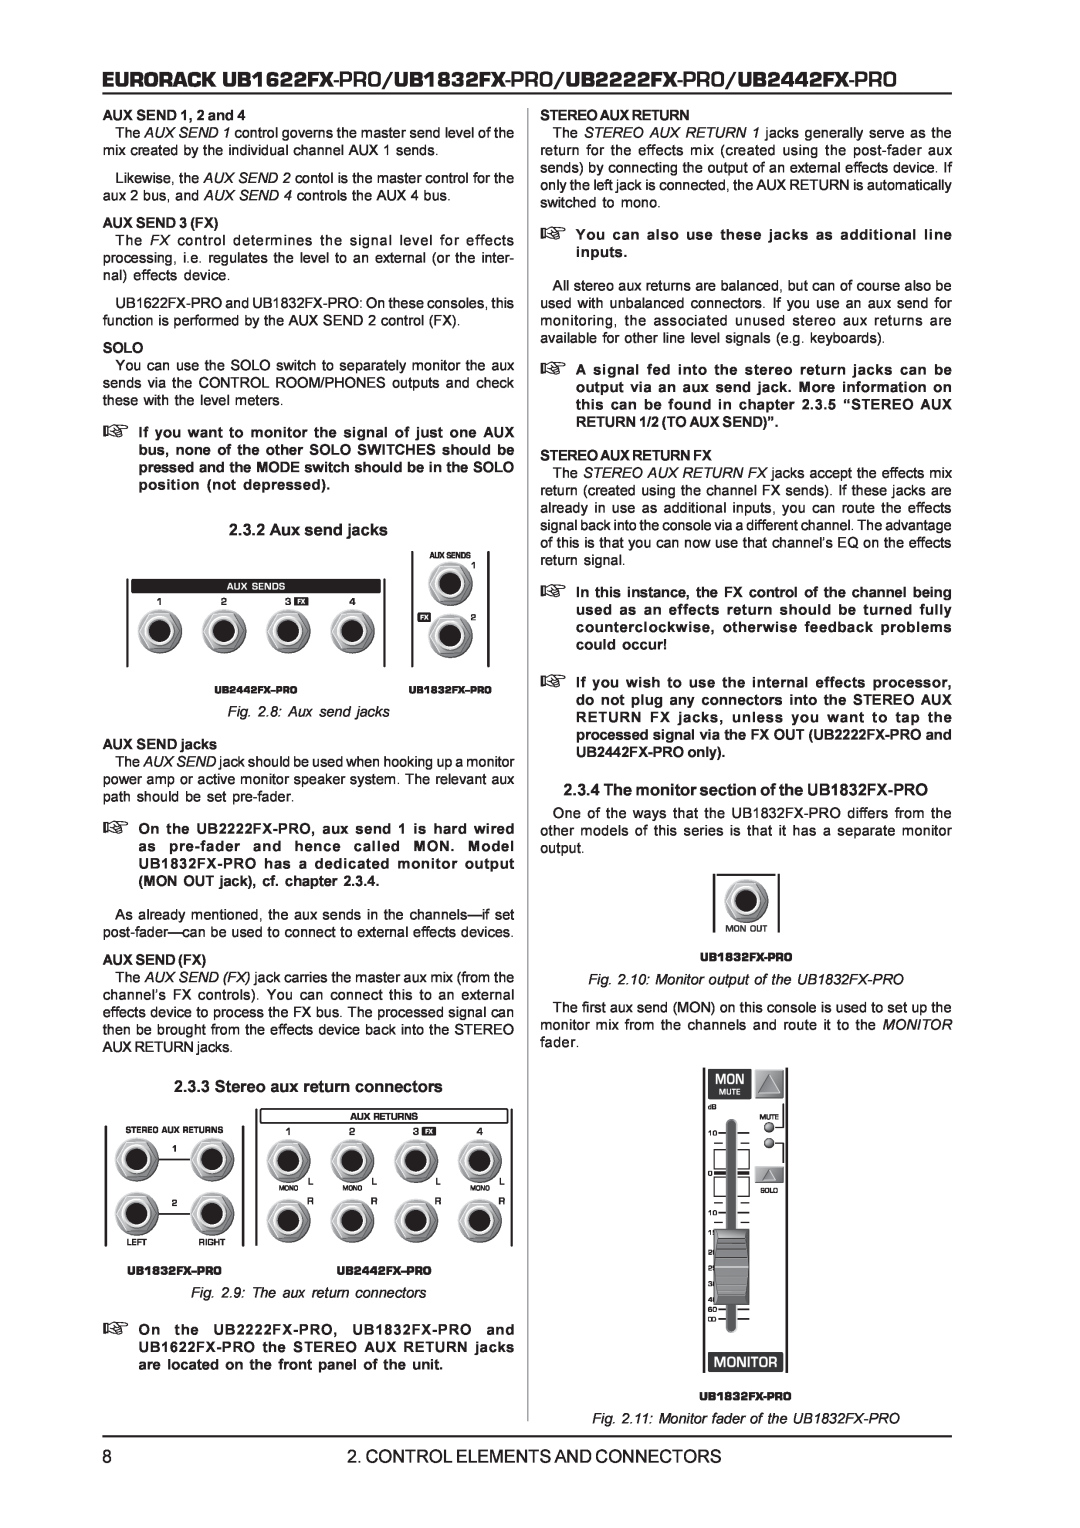 Behringer UB2442FX-PRO, UB2222FX-PRO Control Elements And Connectors, 2.3.2Aux send jacks, Stereo aux return connectors 